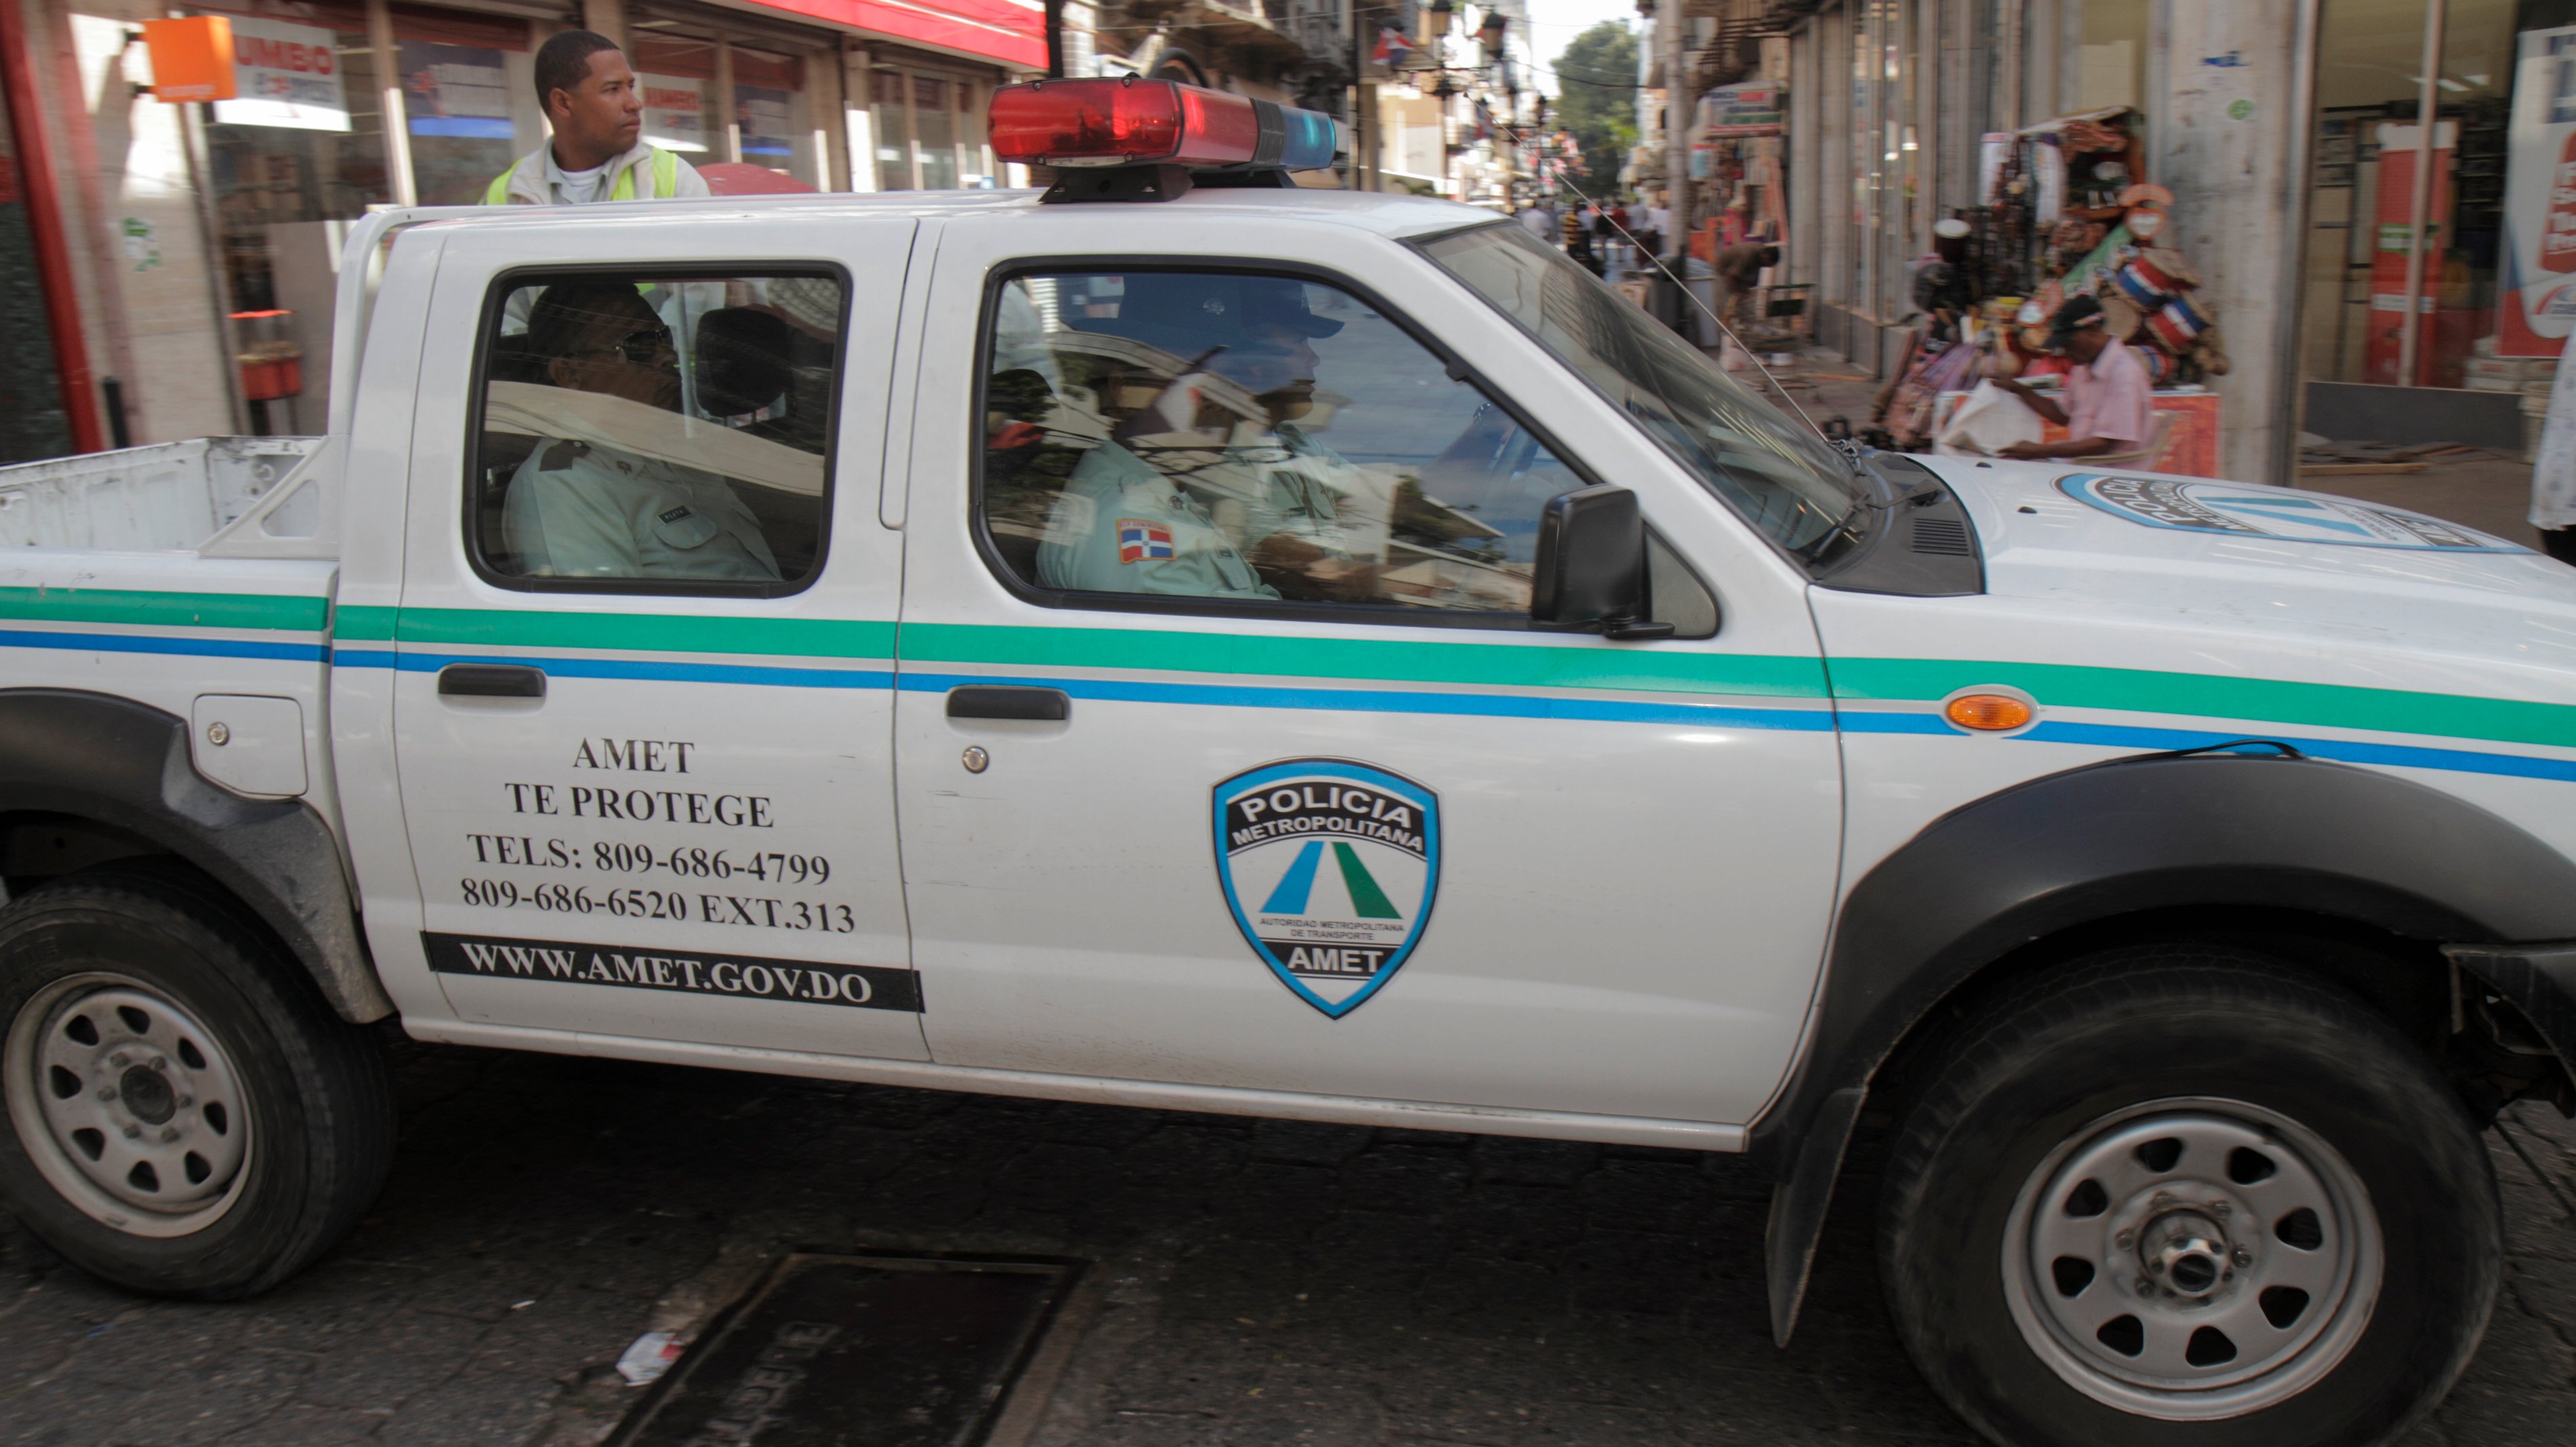 Calle el Conde, Metropolitan Police vehicle